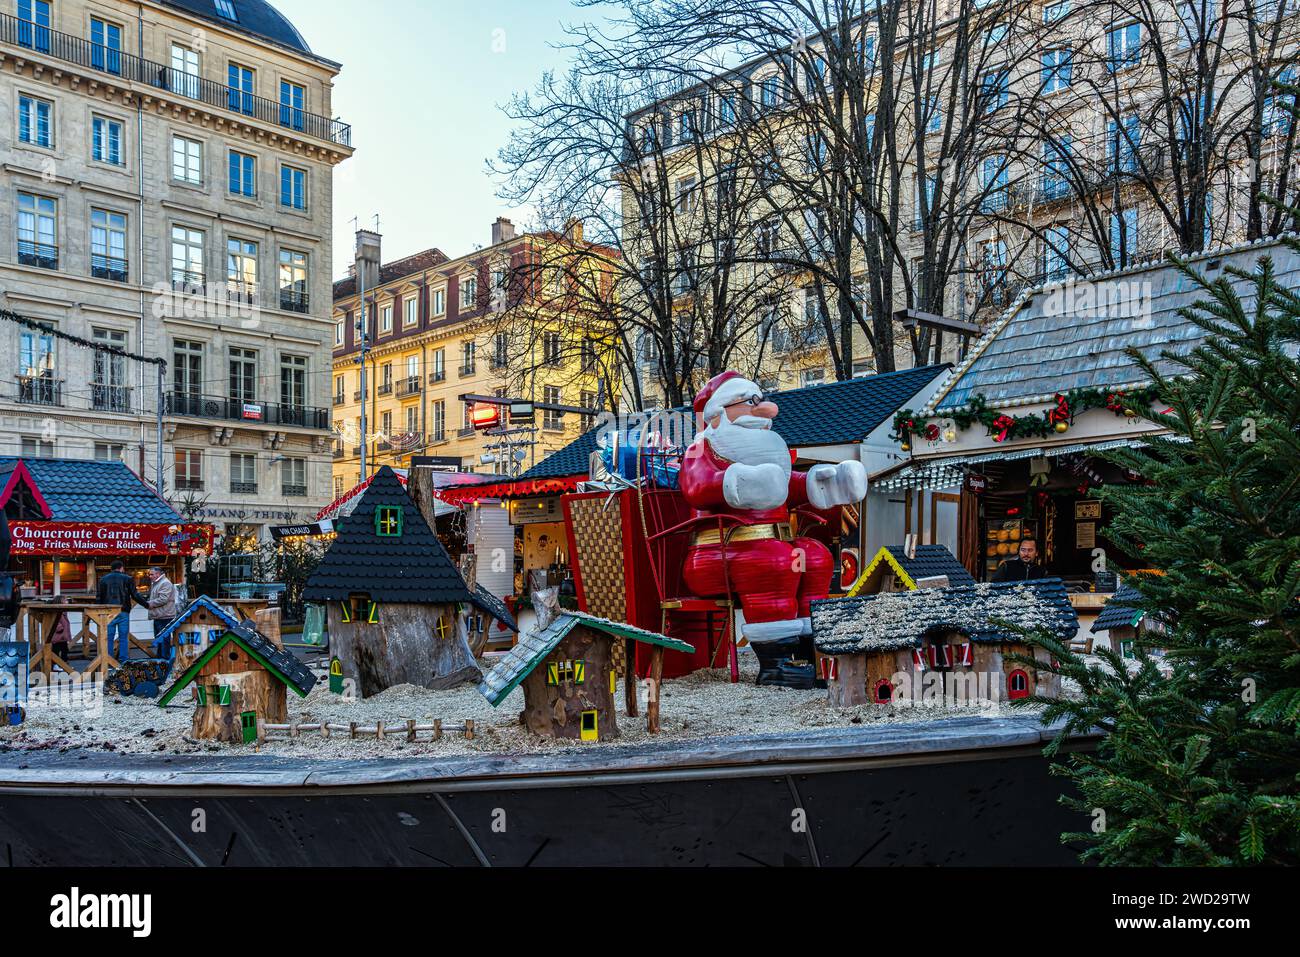 Santa Claus' village at the Saint-Etienne Christmas market in the Place de l'Hotel de Ville. Saint-Étienne, Auvergne-Rhône-Alpes region, France Stock Photo